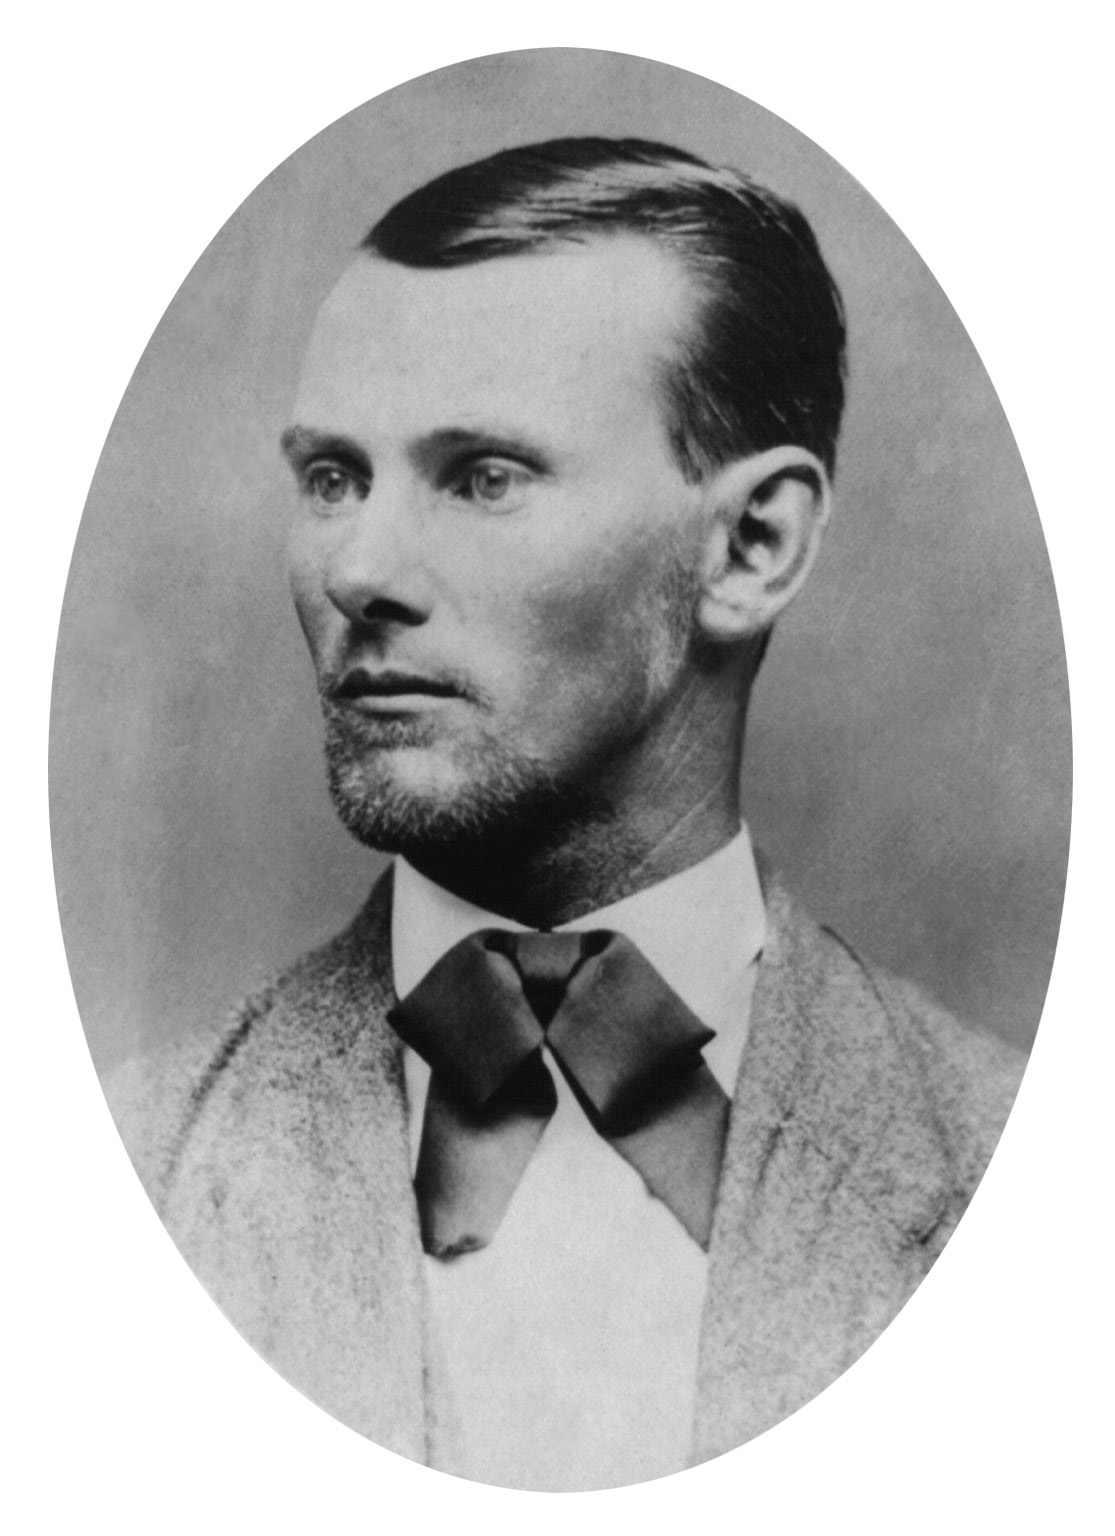 Jesse James, c1882